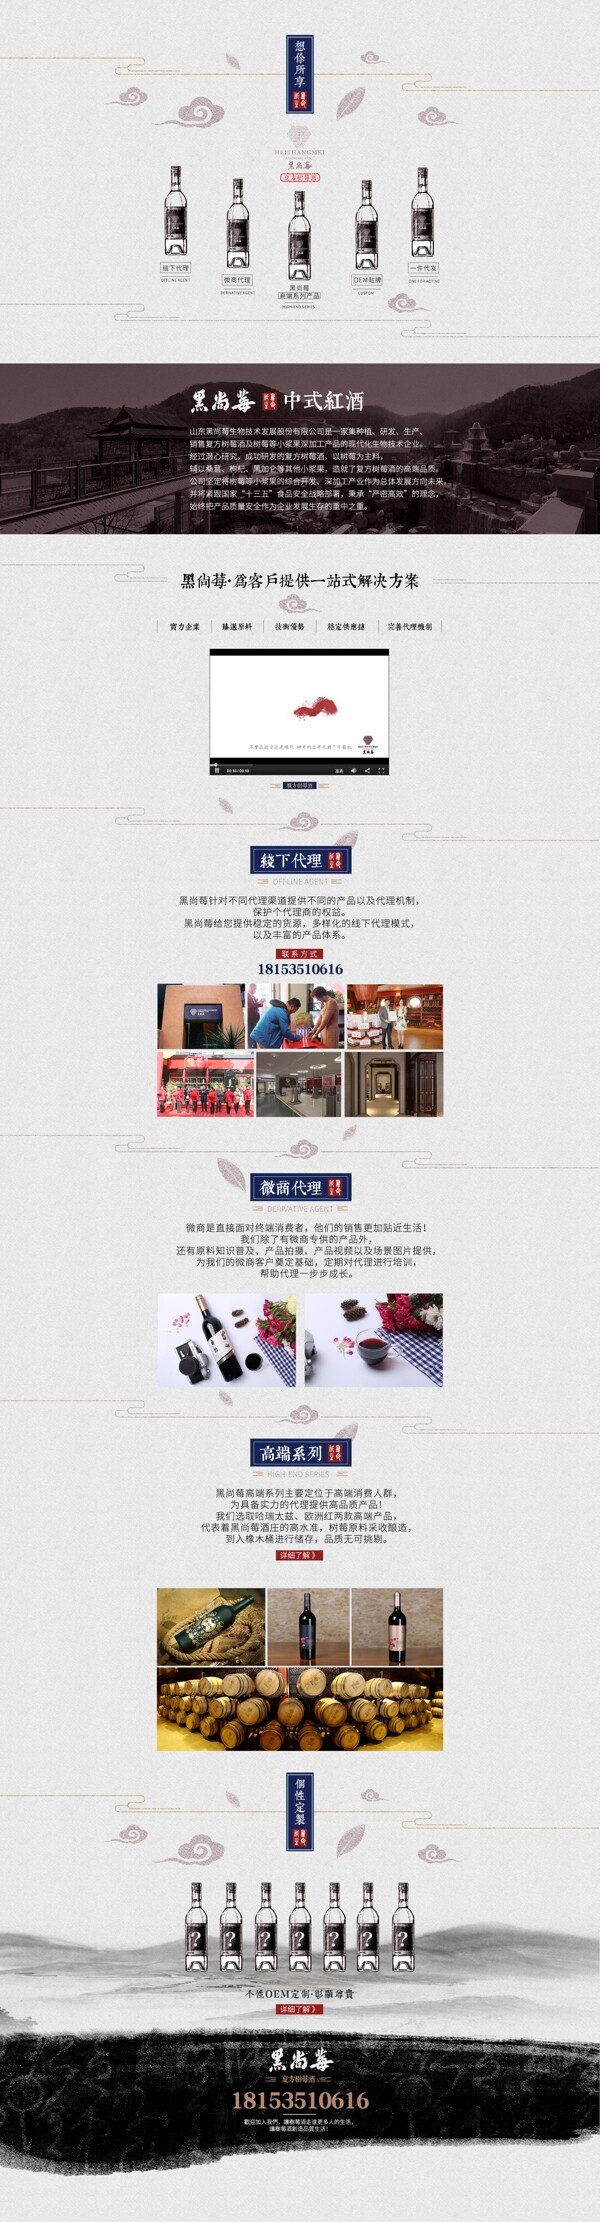 天猫京东淘宝电商节日促销饮料酒品首页设计排版模板